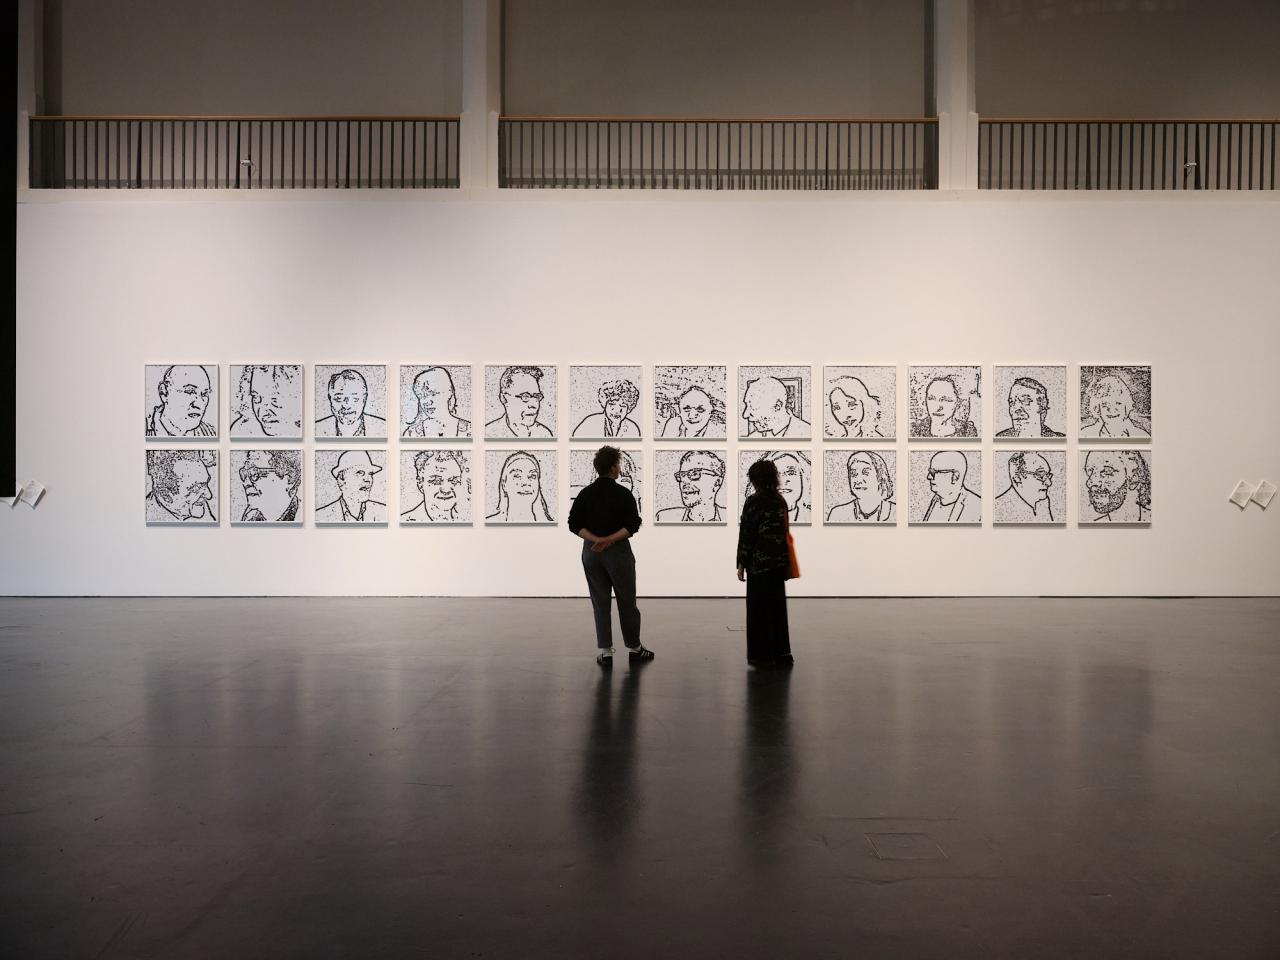 Das Bild zeigt eine Totalaufnahme des Werkes »Porträt on the Fly«, vor dem zwei Personen mit dem Rücken zur Kamera stehen und die Bilder betrachten. Im gesamten sind zwei Reihen mit je 12 Bildern zu sehen, die alle das Porträt einer Person zeigen.